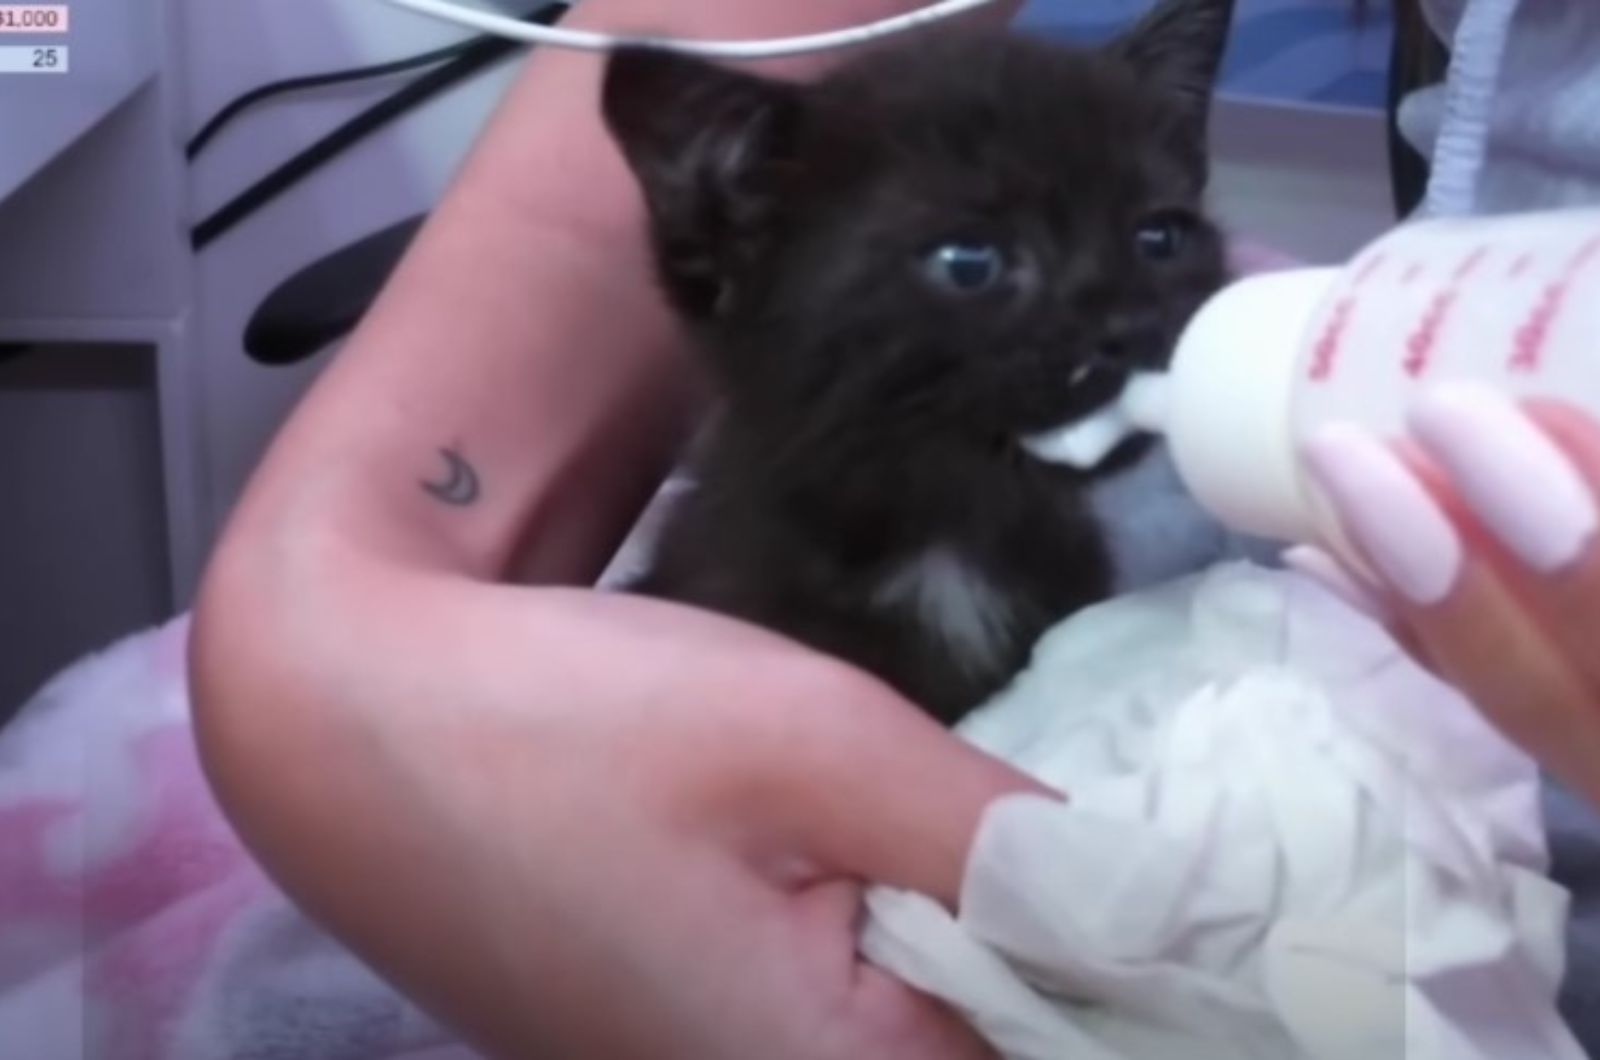 kitten eating from a bottle